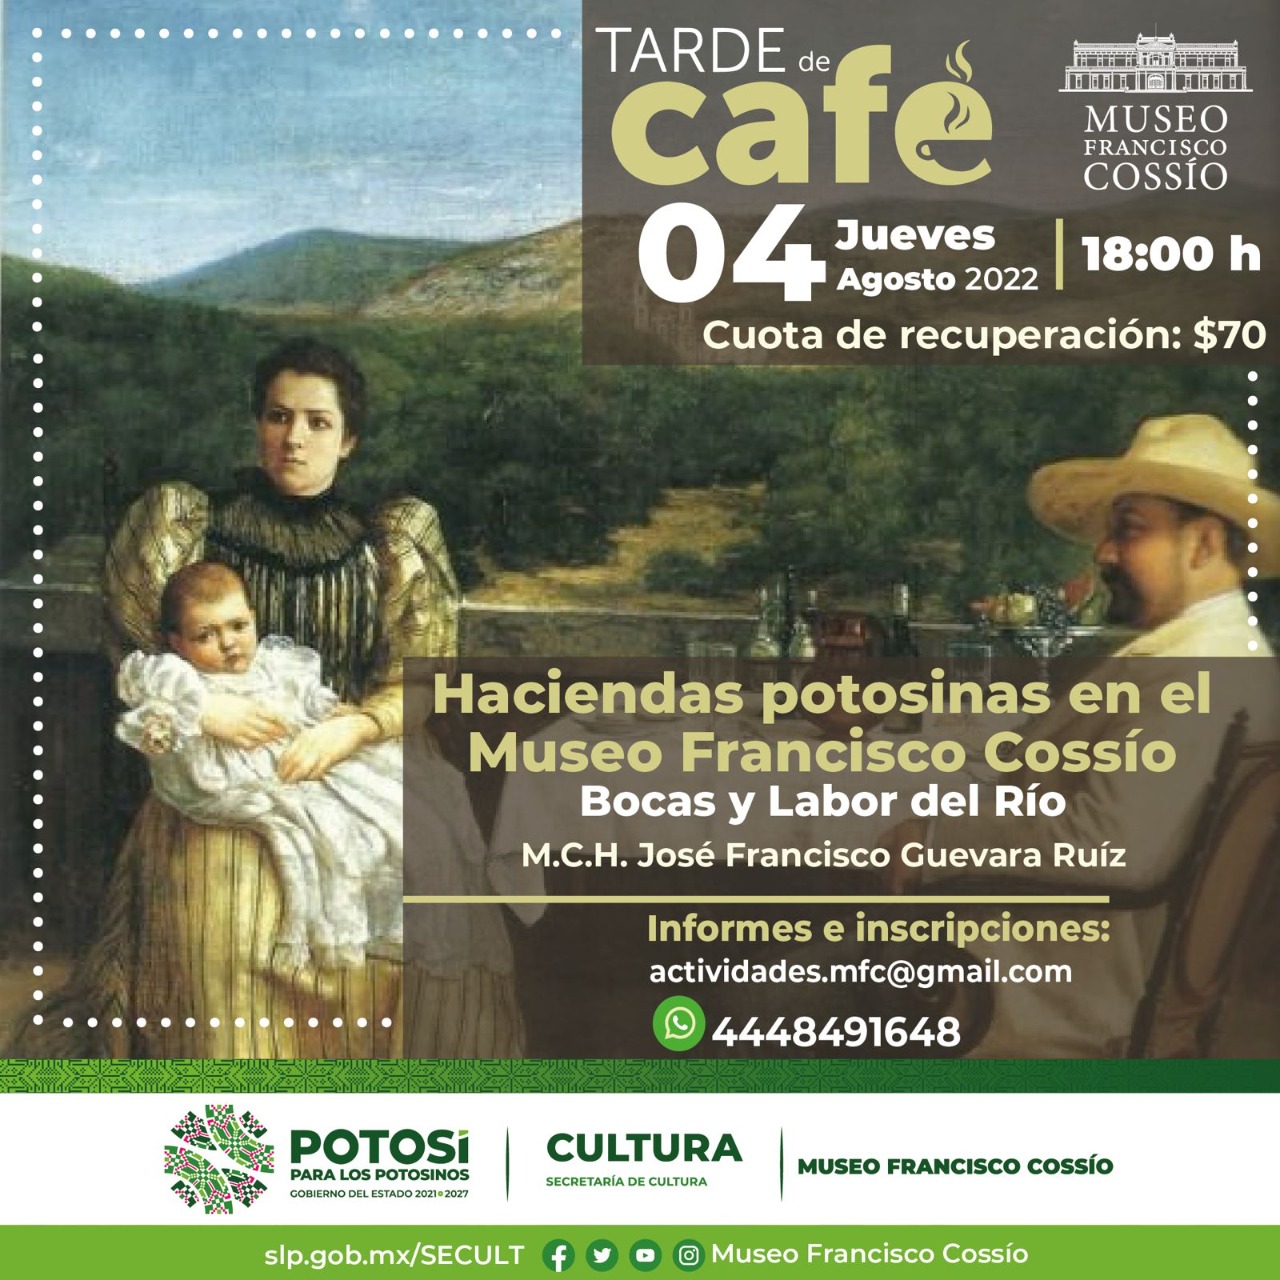 Invitan al público en general a participar en la Tarde de café “Haciendas potosinas en el Museo Francisco Cossío”